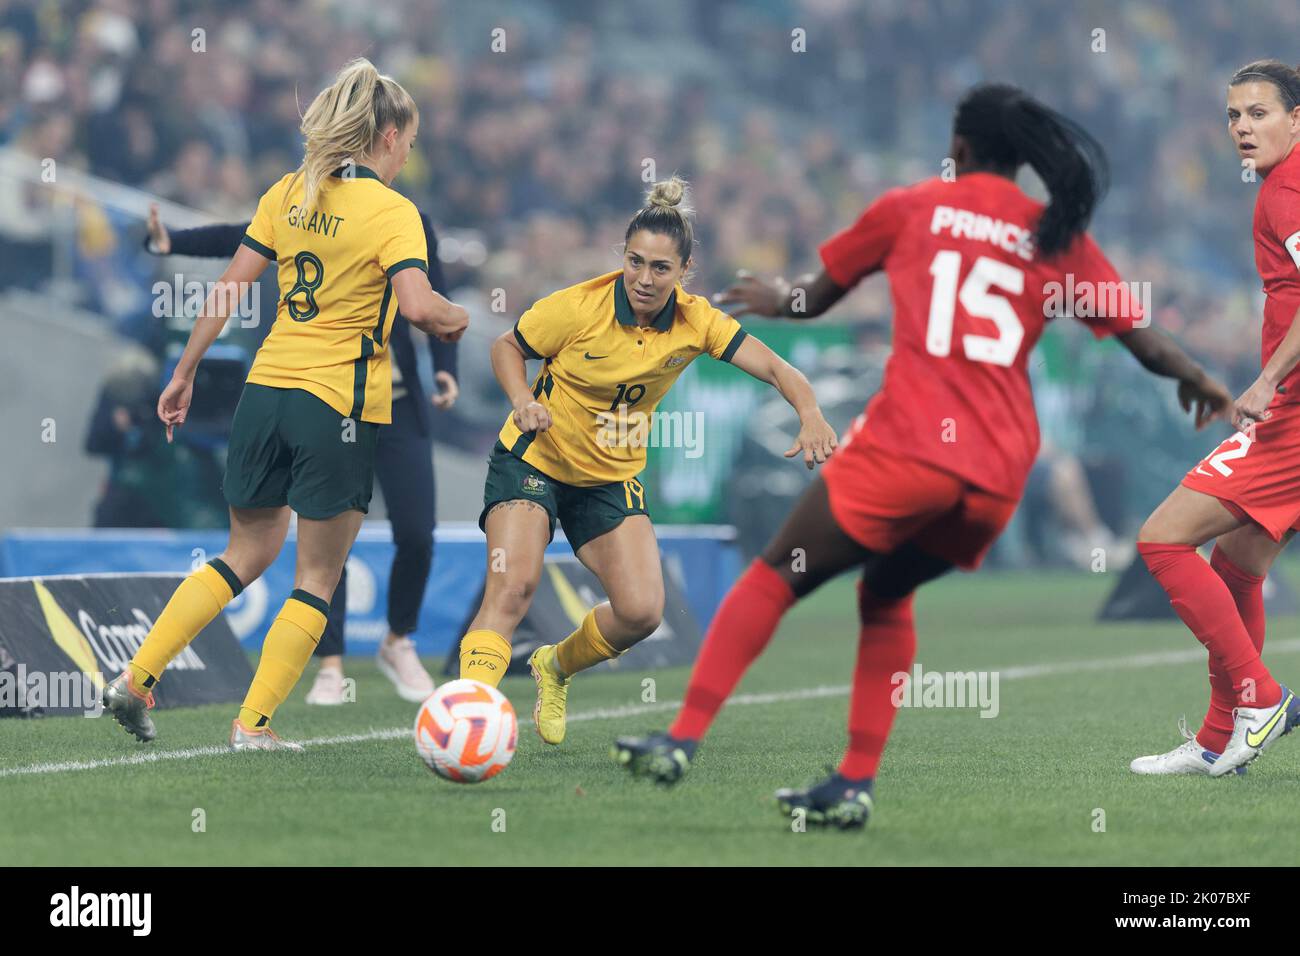 SYDNEY, AUSTRALIA - SETTEMBRE 6: Charlotte Grant of Australia controlla la palla durante l'International friendly Match tra Australia e Canada A. Foto Stock